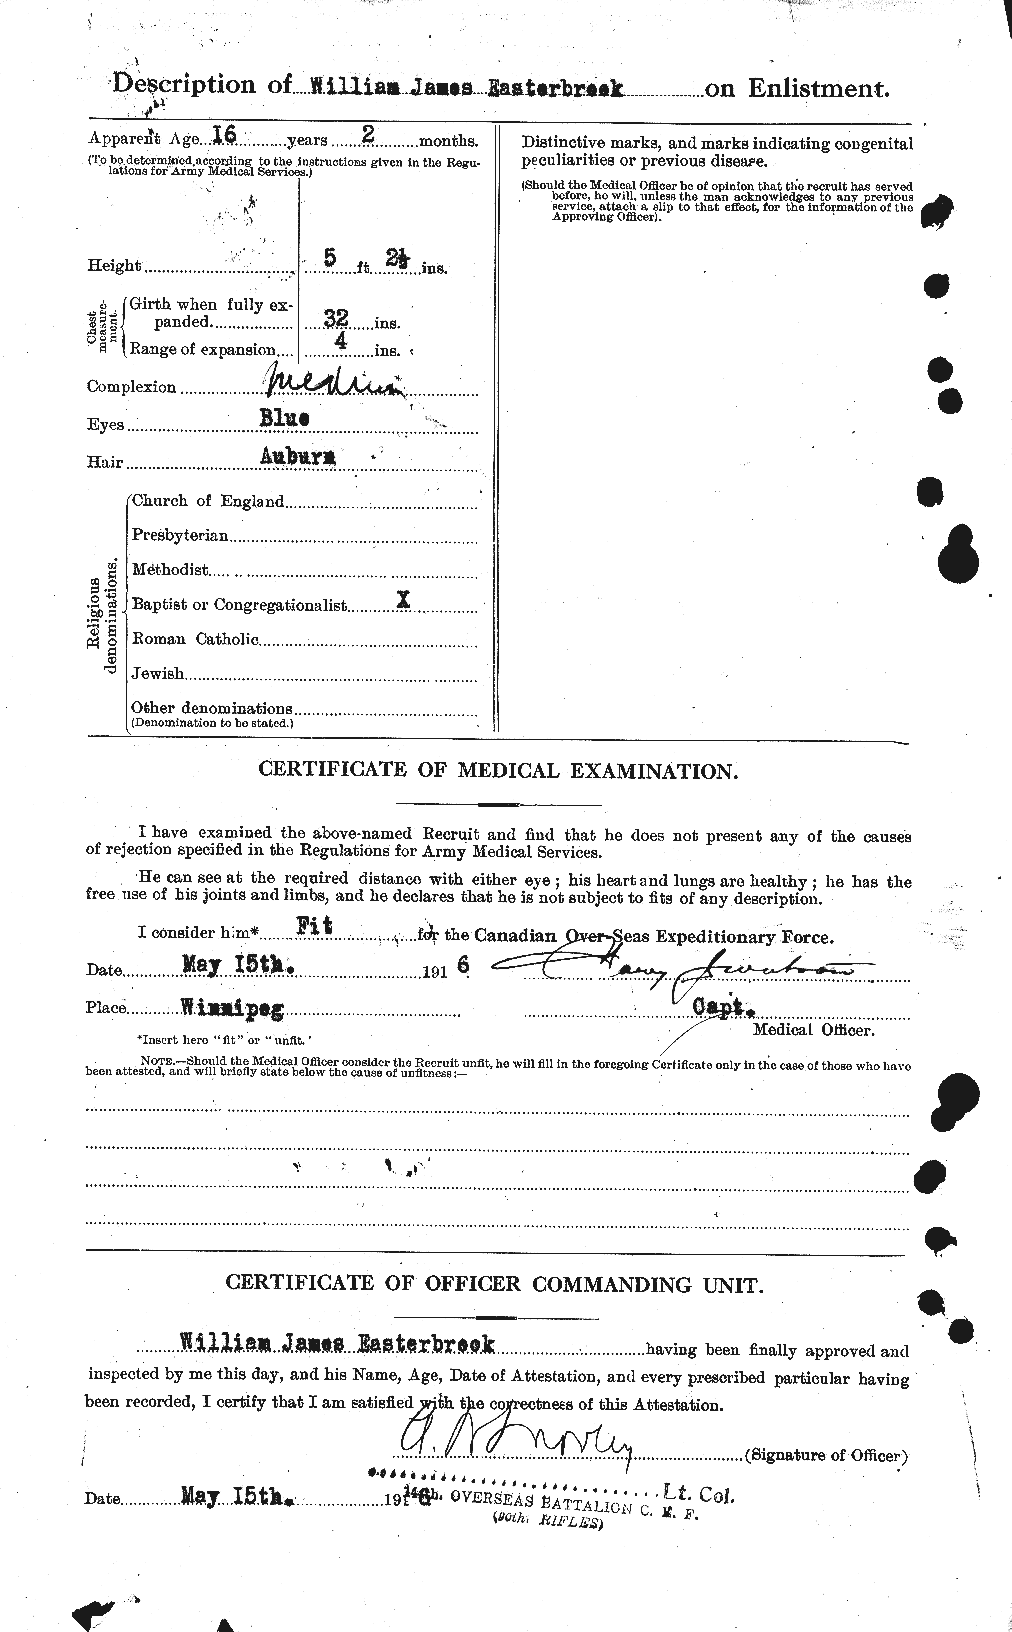 Dossiers du Personnel de la Première Guerre mondiale - CEC 307726b